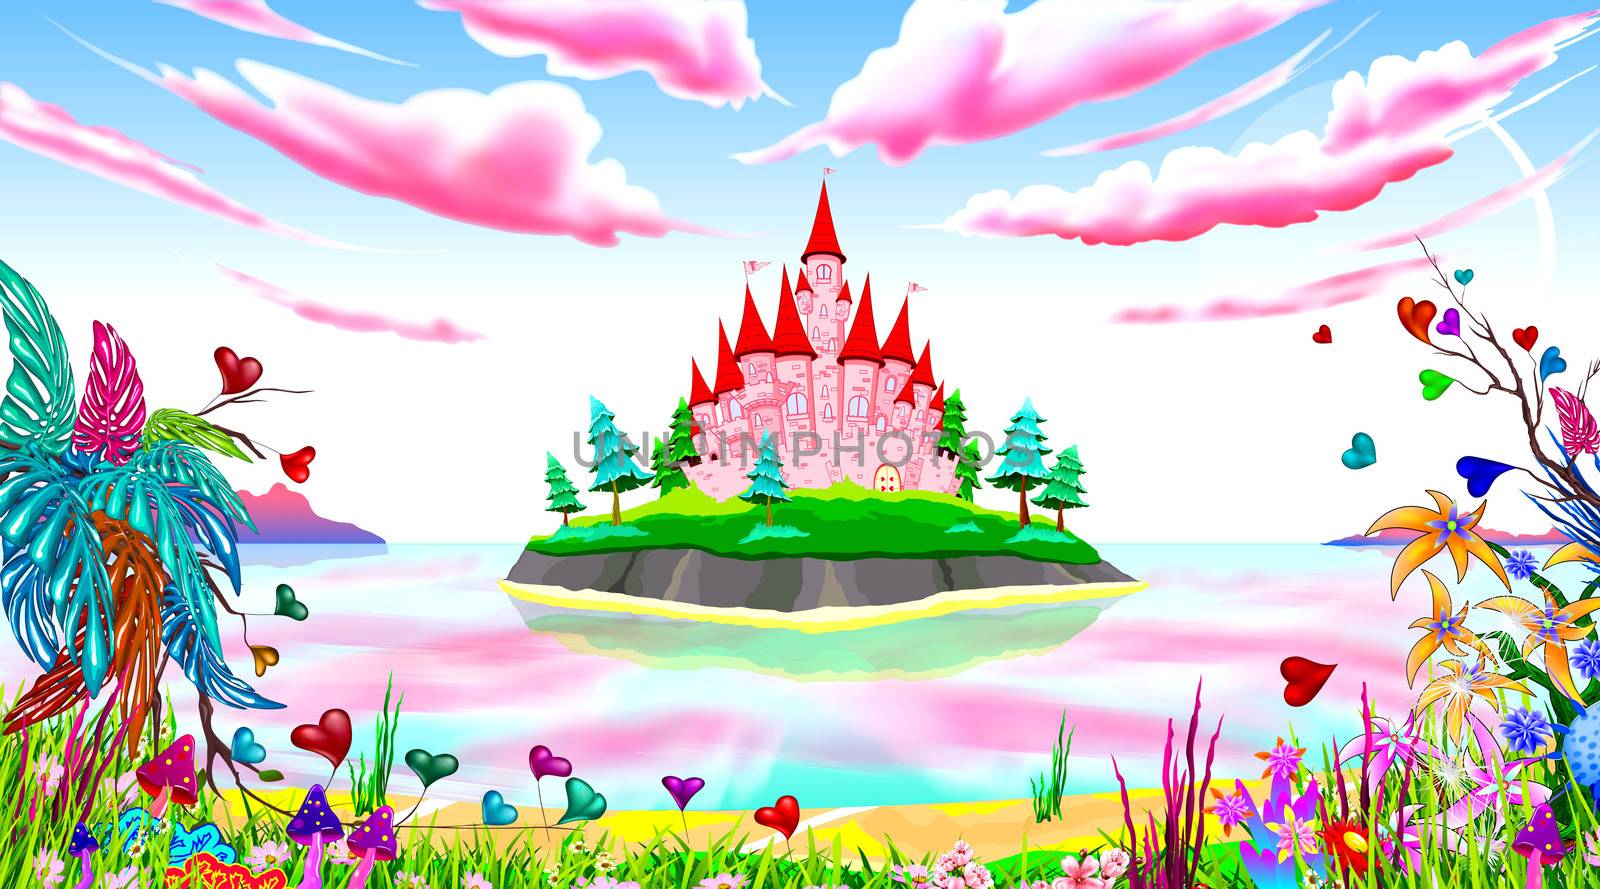 Pink princess castle fairytale landscape by liolle